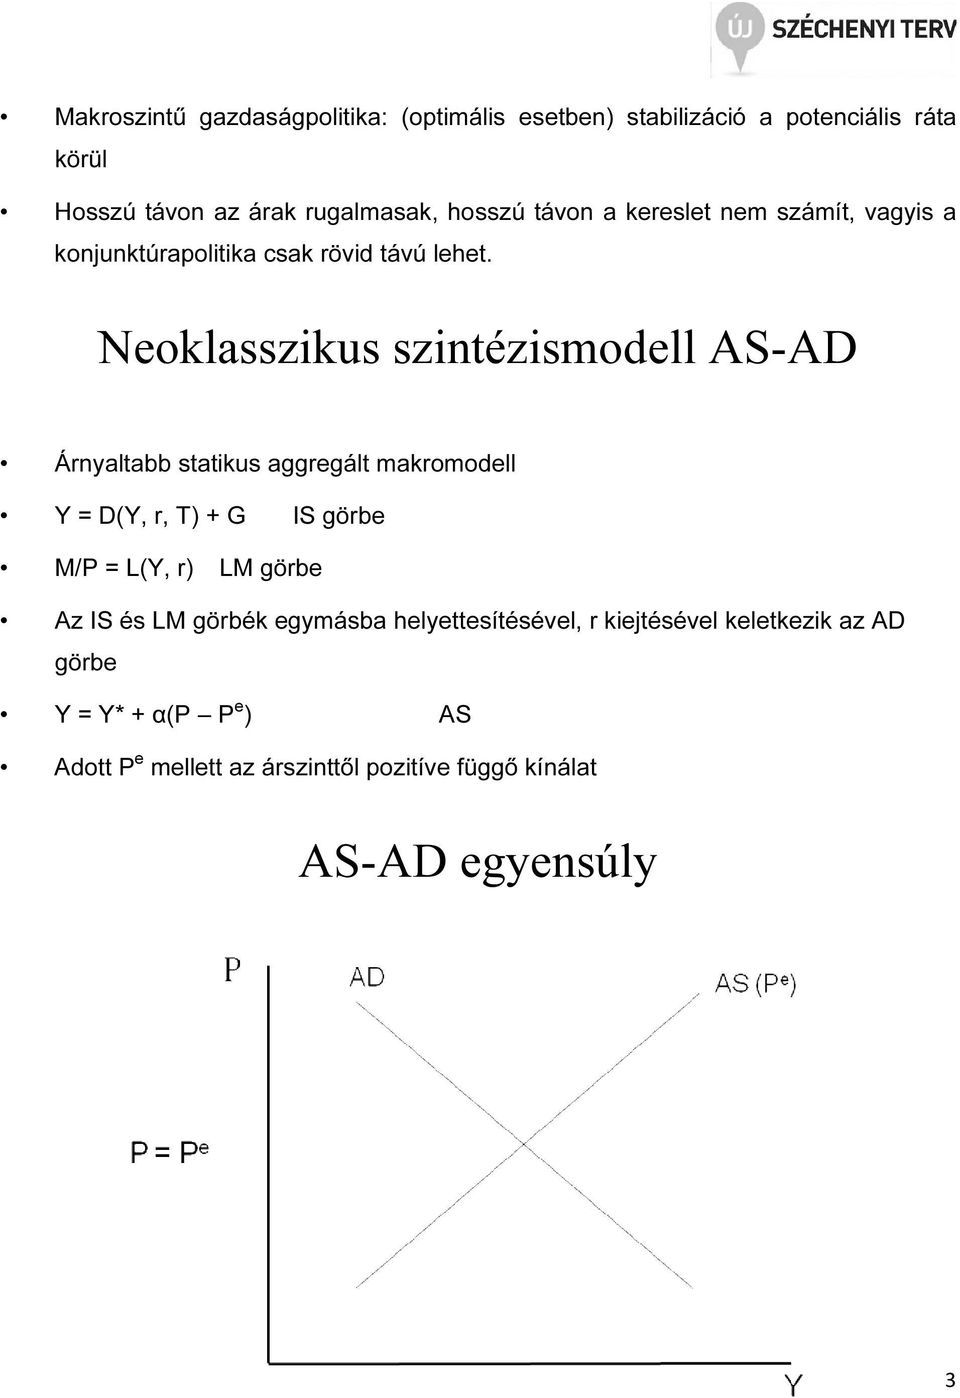 Neoklasszikus szinézismodell AS-AD Árnyalabb saikus aggregál makromodell Y = D(Y, r, T) + G IS görbe M/P = L(Y, r) LM